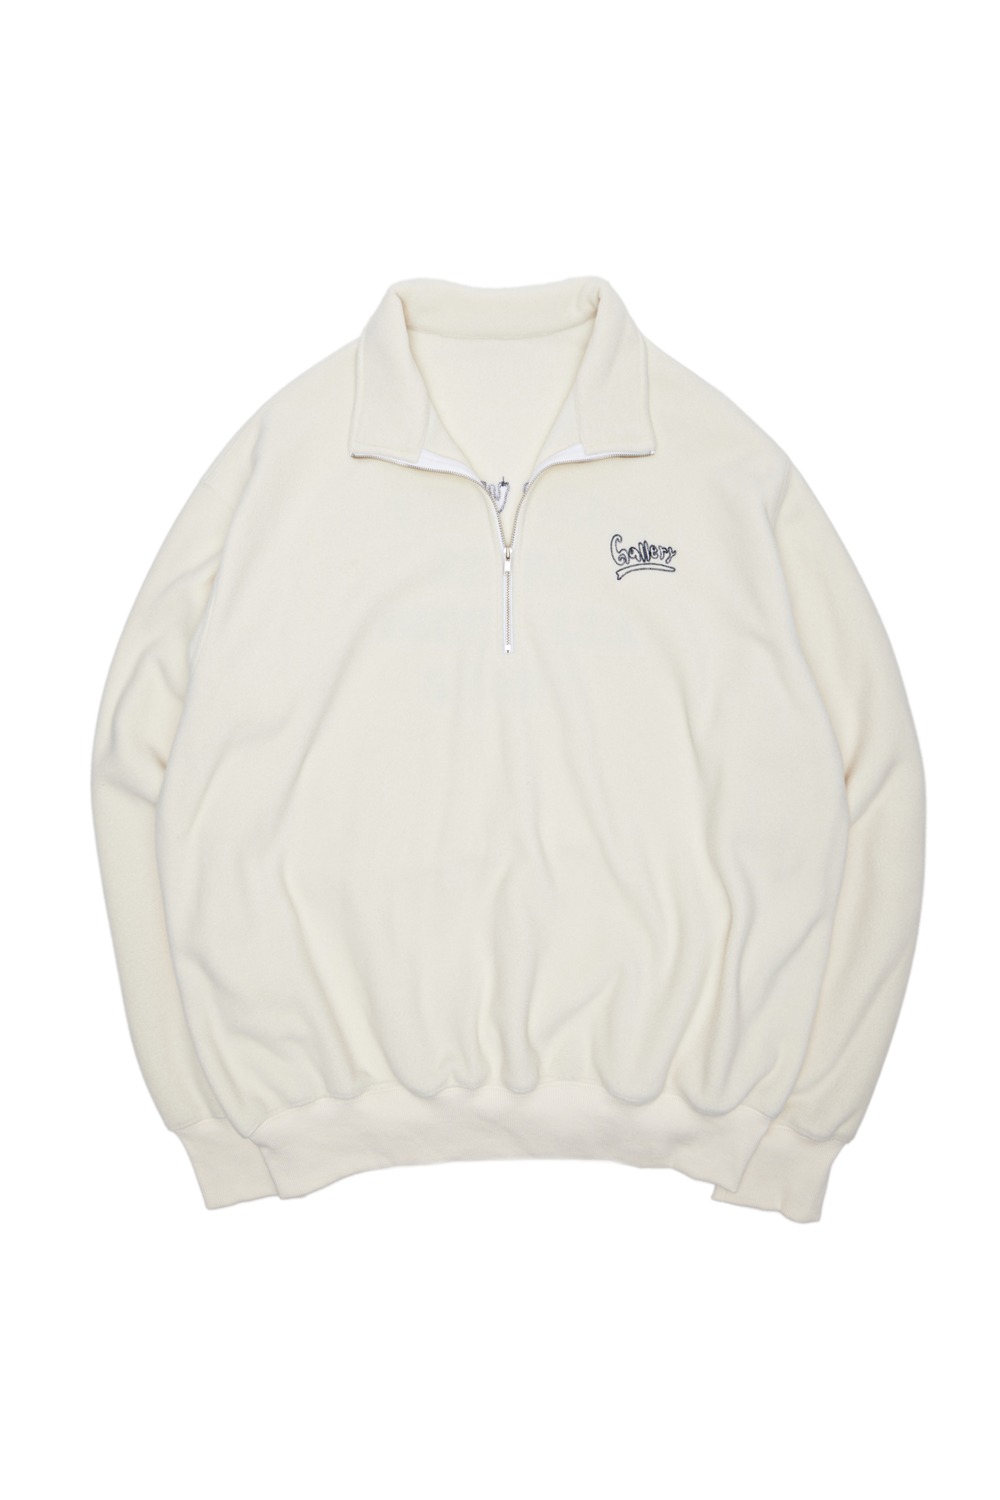 Gallery Fleece Half-Zip Sweatshirt - Ivory